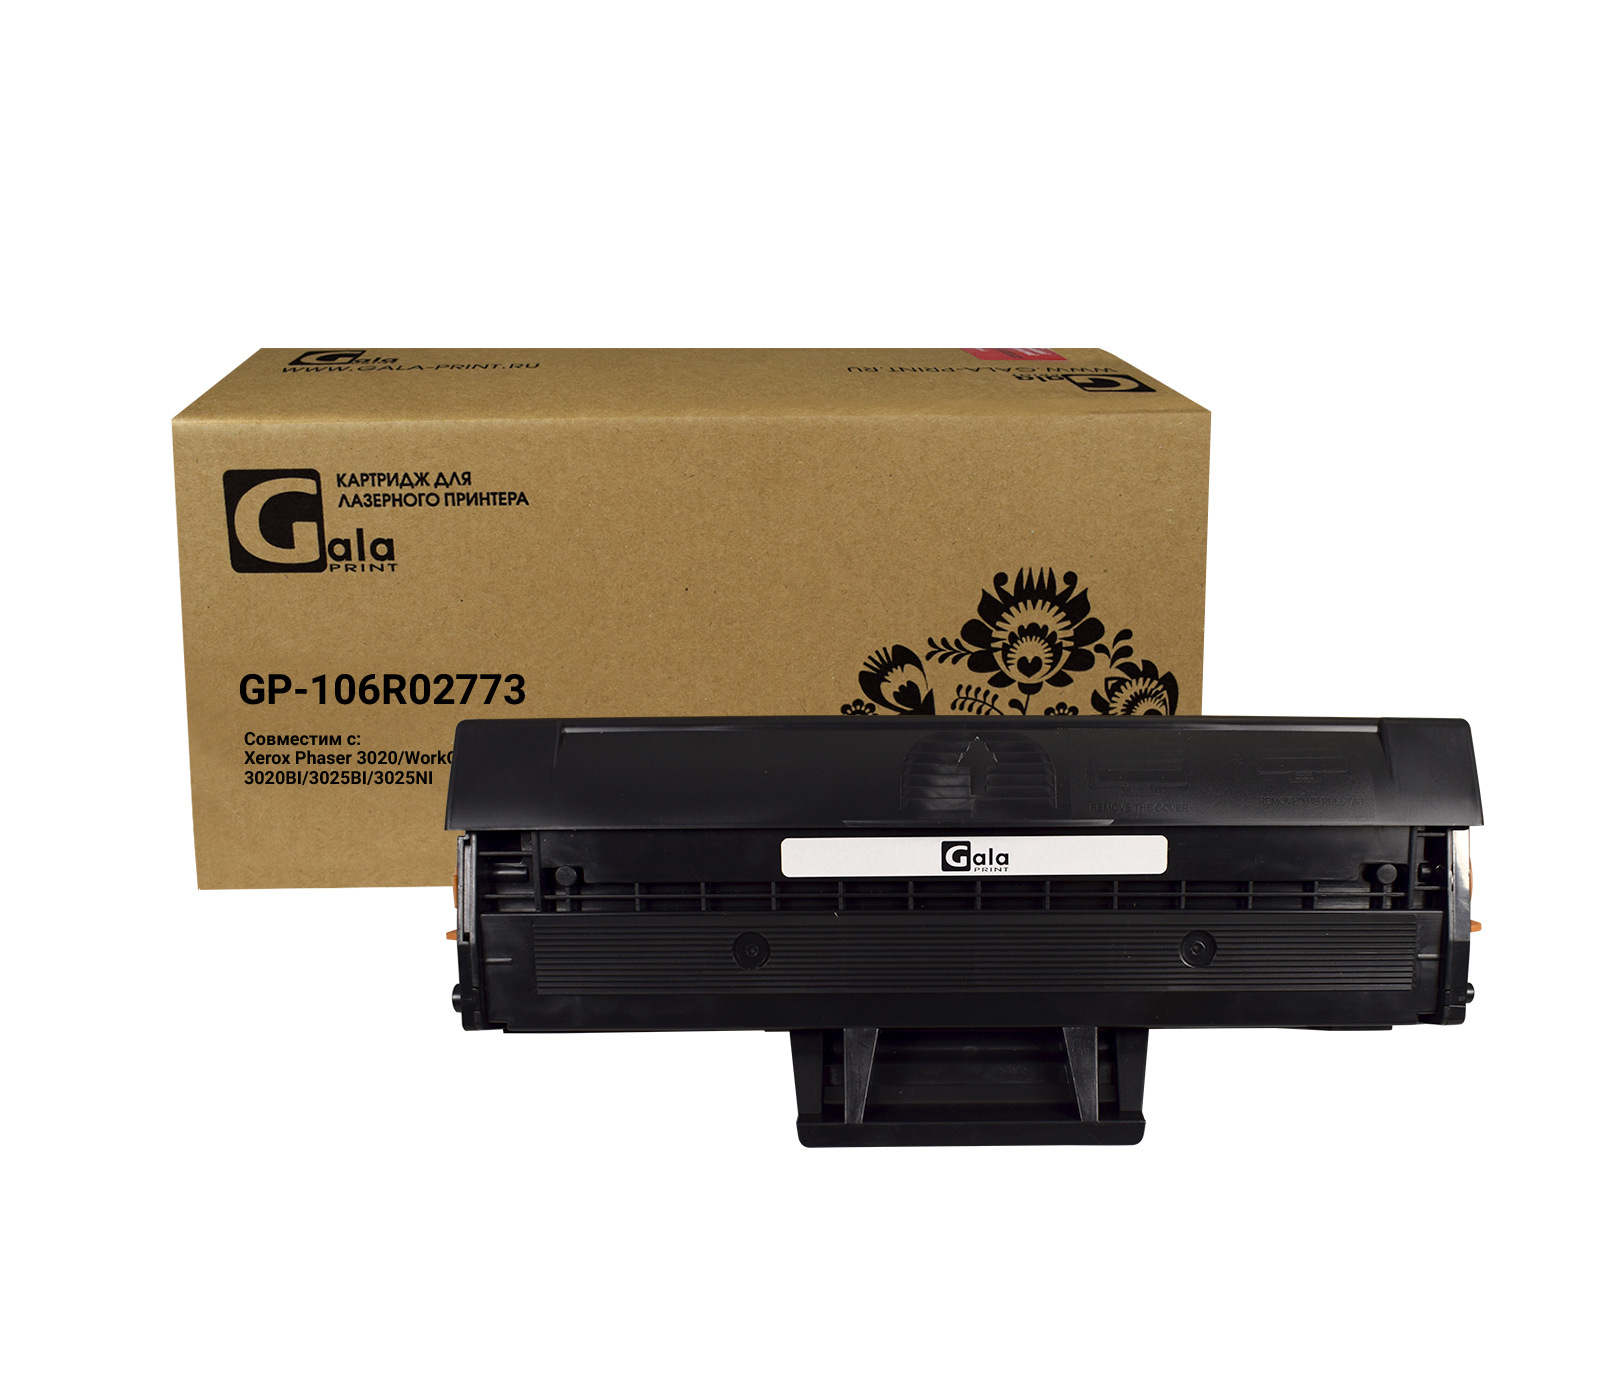 Картридж GP-106R02773 для принтеров Rank Xerox WC 3025/Phaser 3020 1500 копий GalaPrint